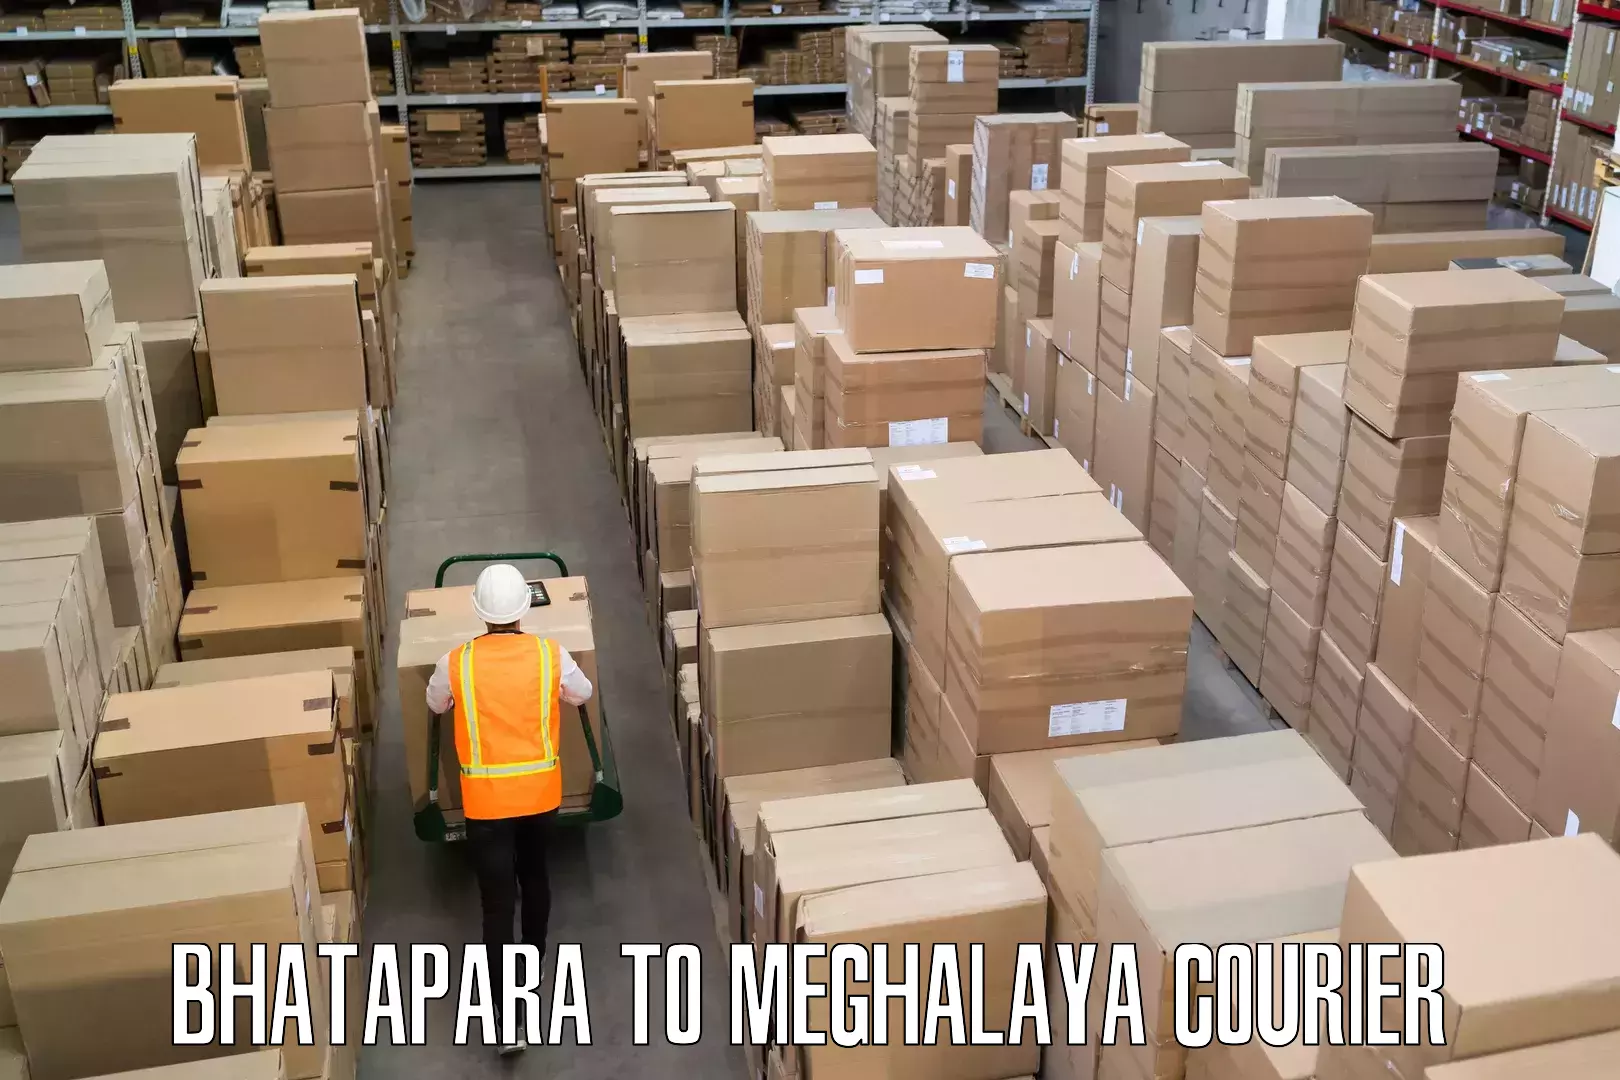 Luggage transport operations Bhatapara to Meghalaya